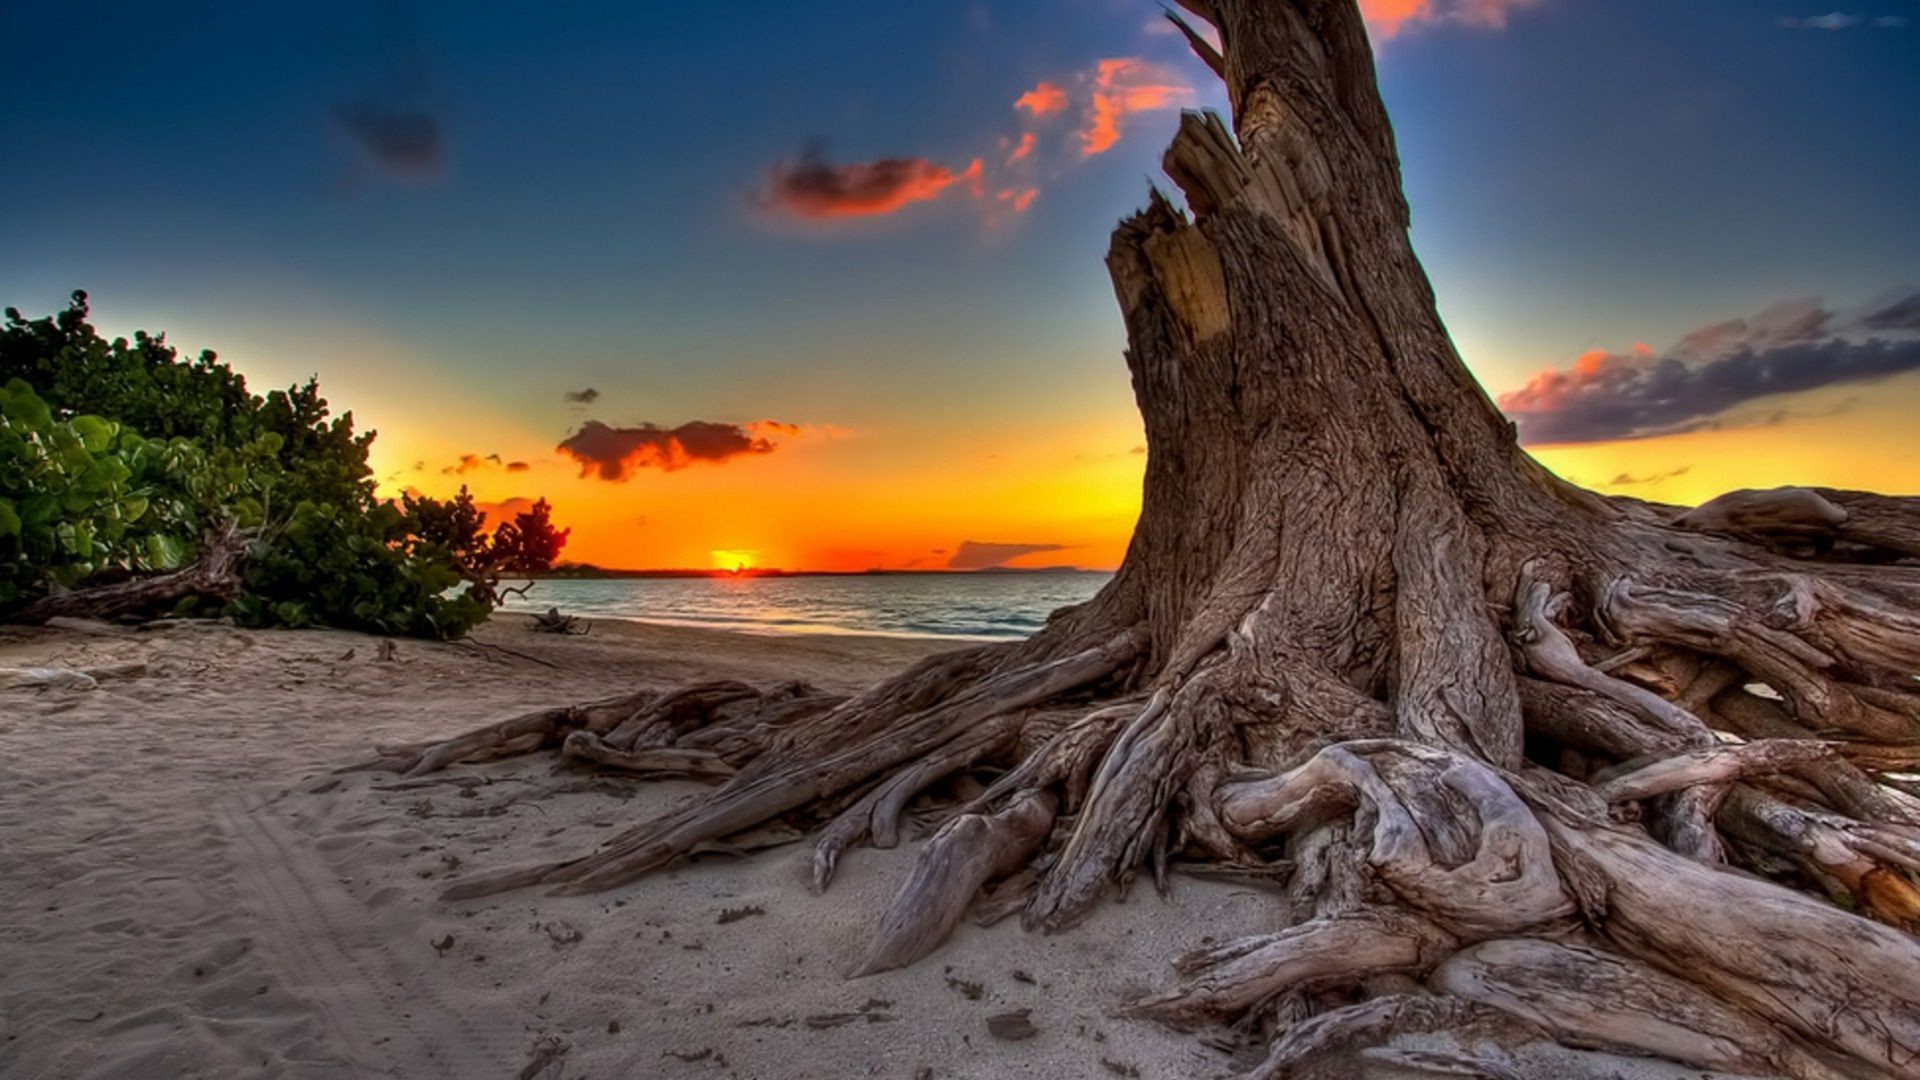 earth, sunset, beach, ocean, sea, stump, tree